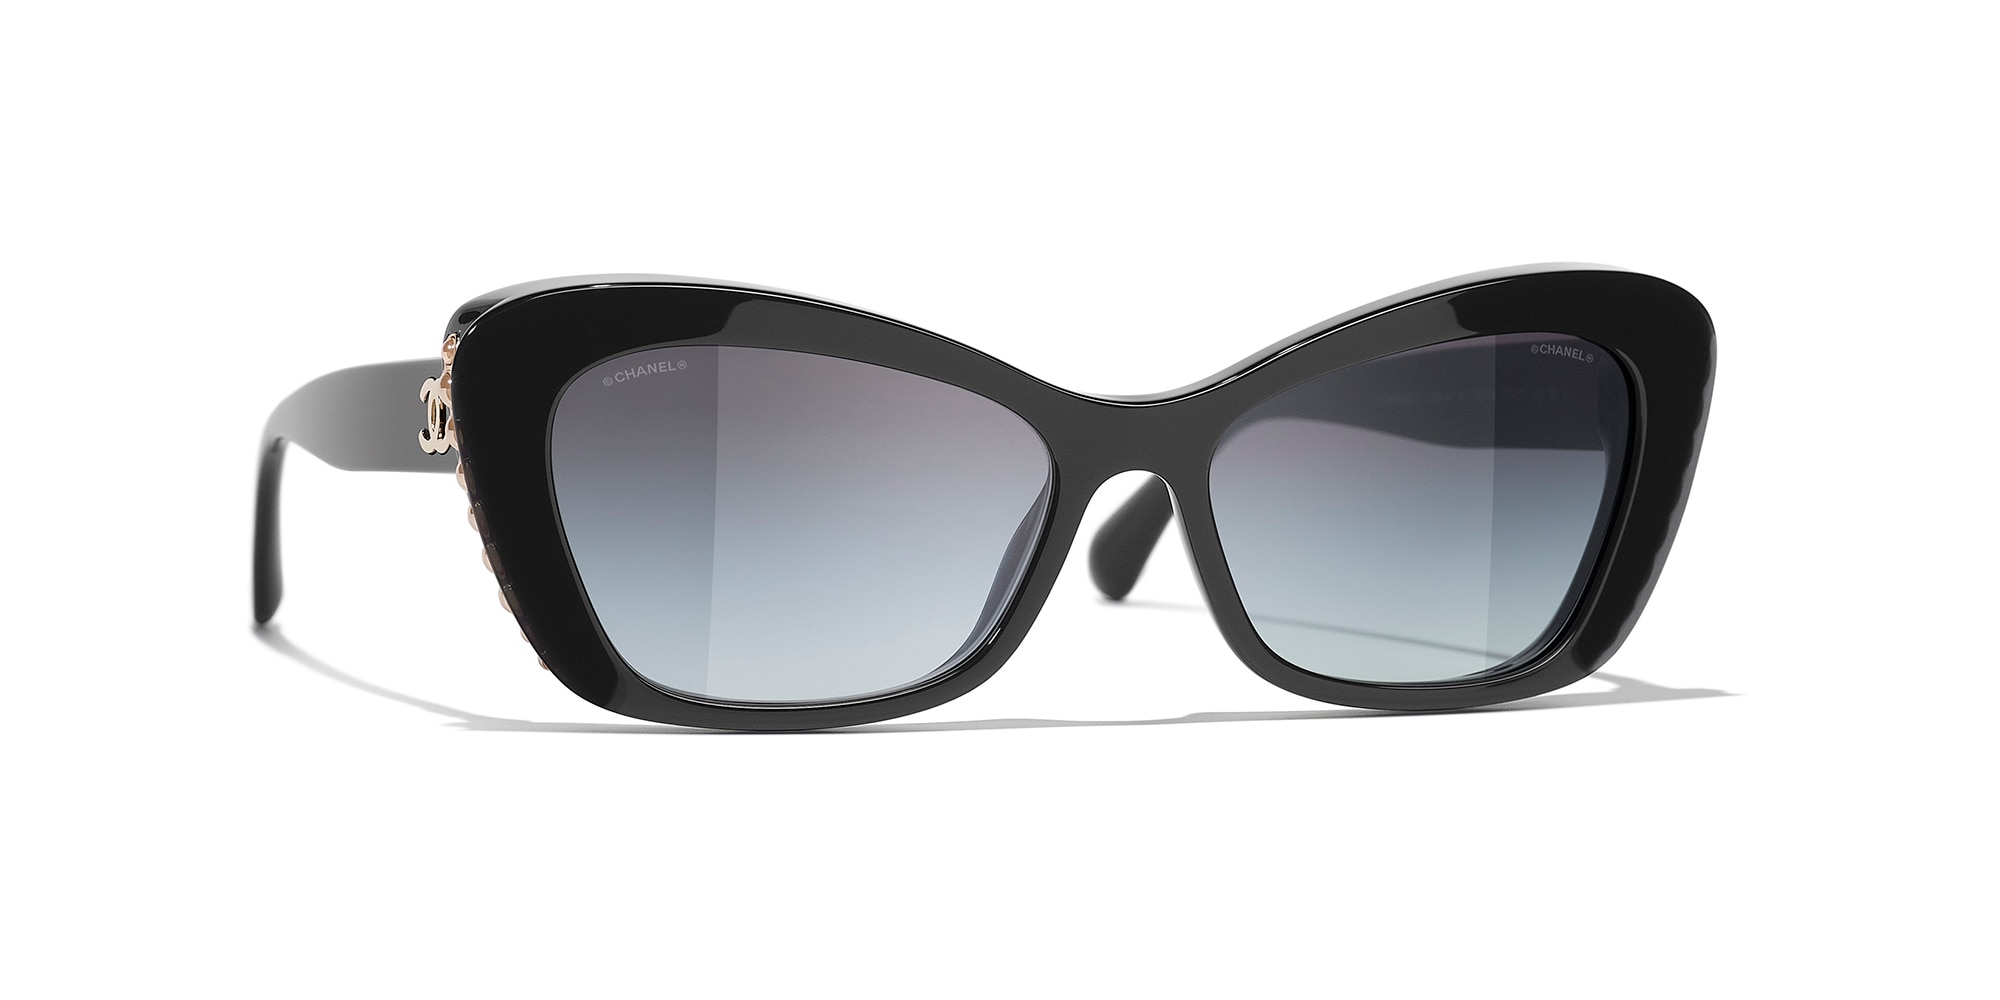 Sunglasses Square Sunglasses acetate  strass  Fashion  CHANEL